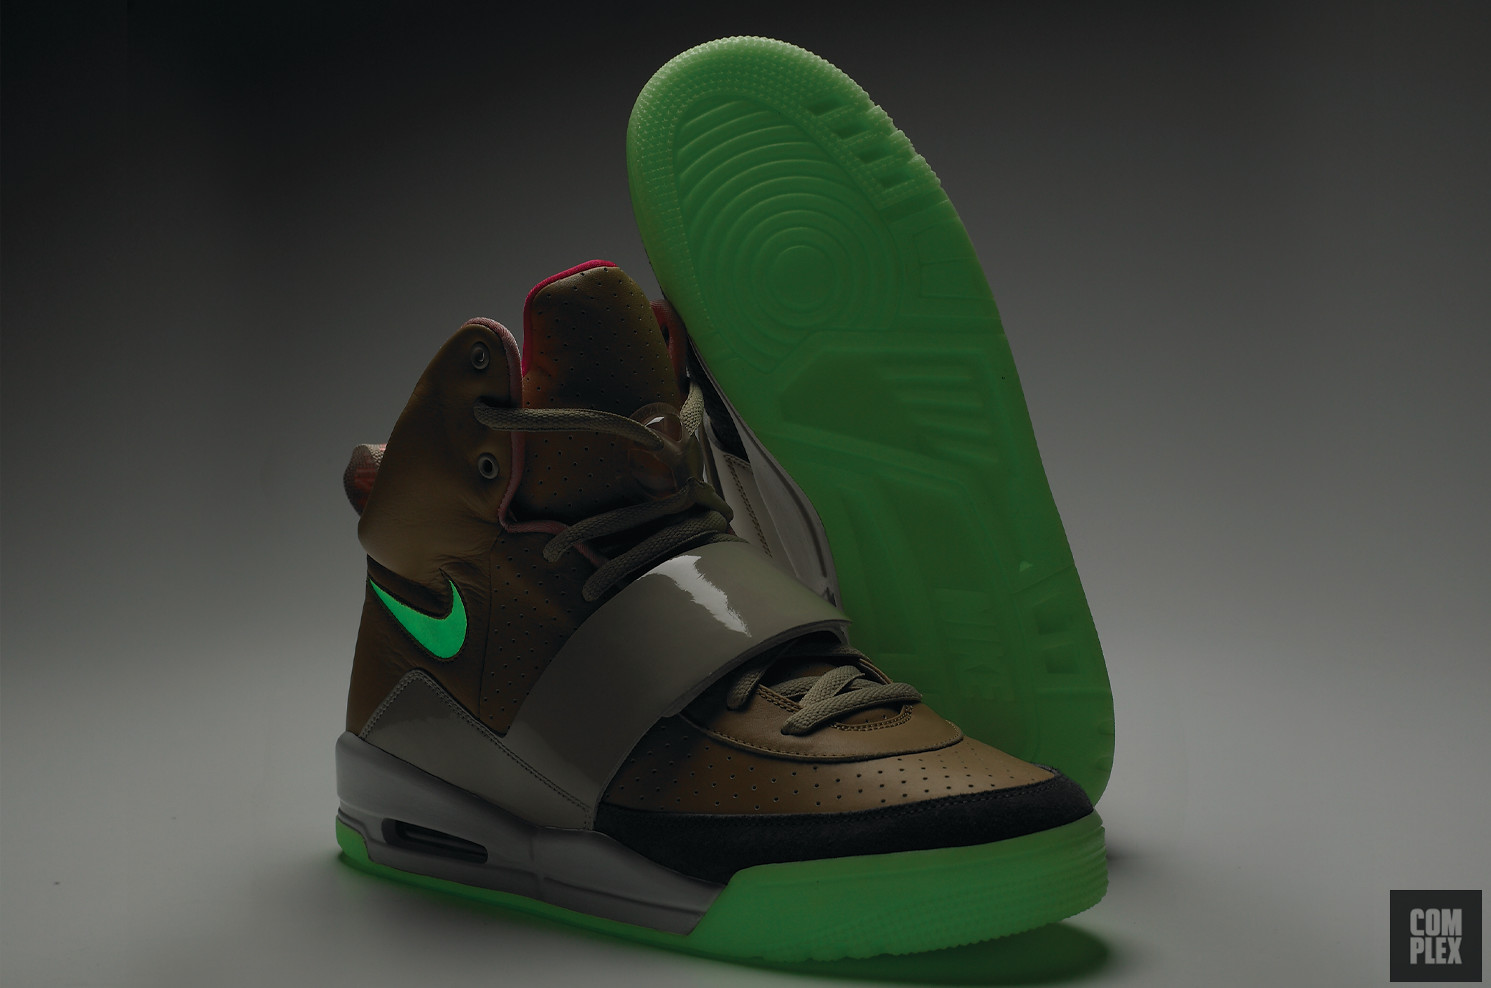 Nike Air Yeezy 1 Blink 2009 Kanye West Sneaker